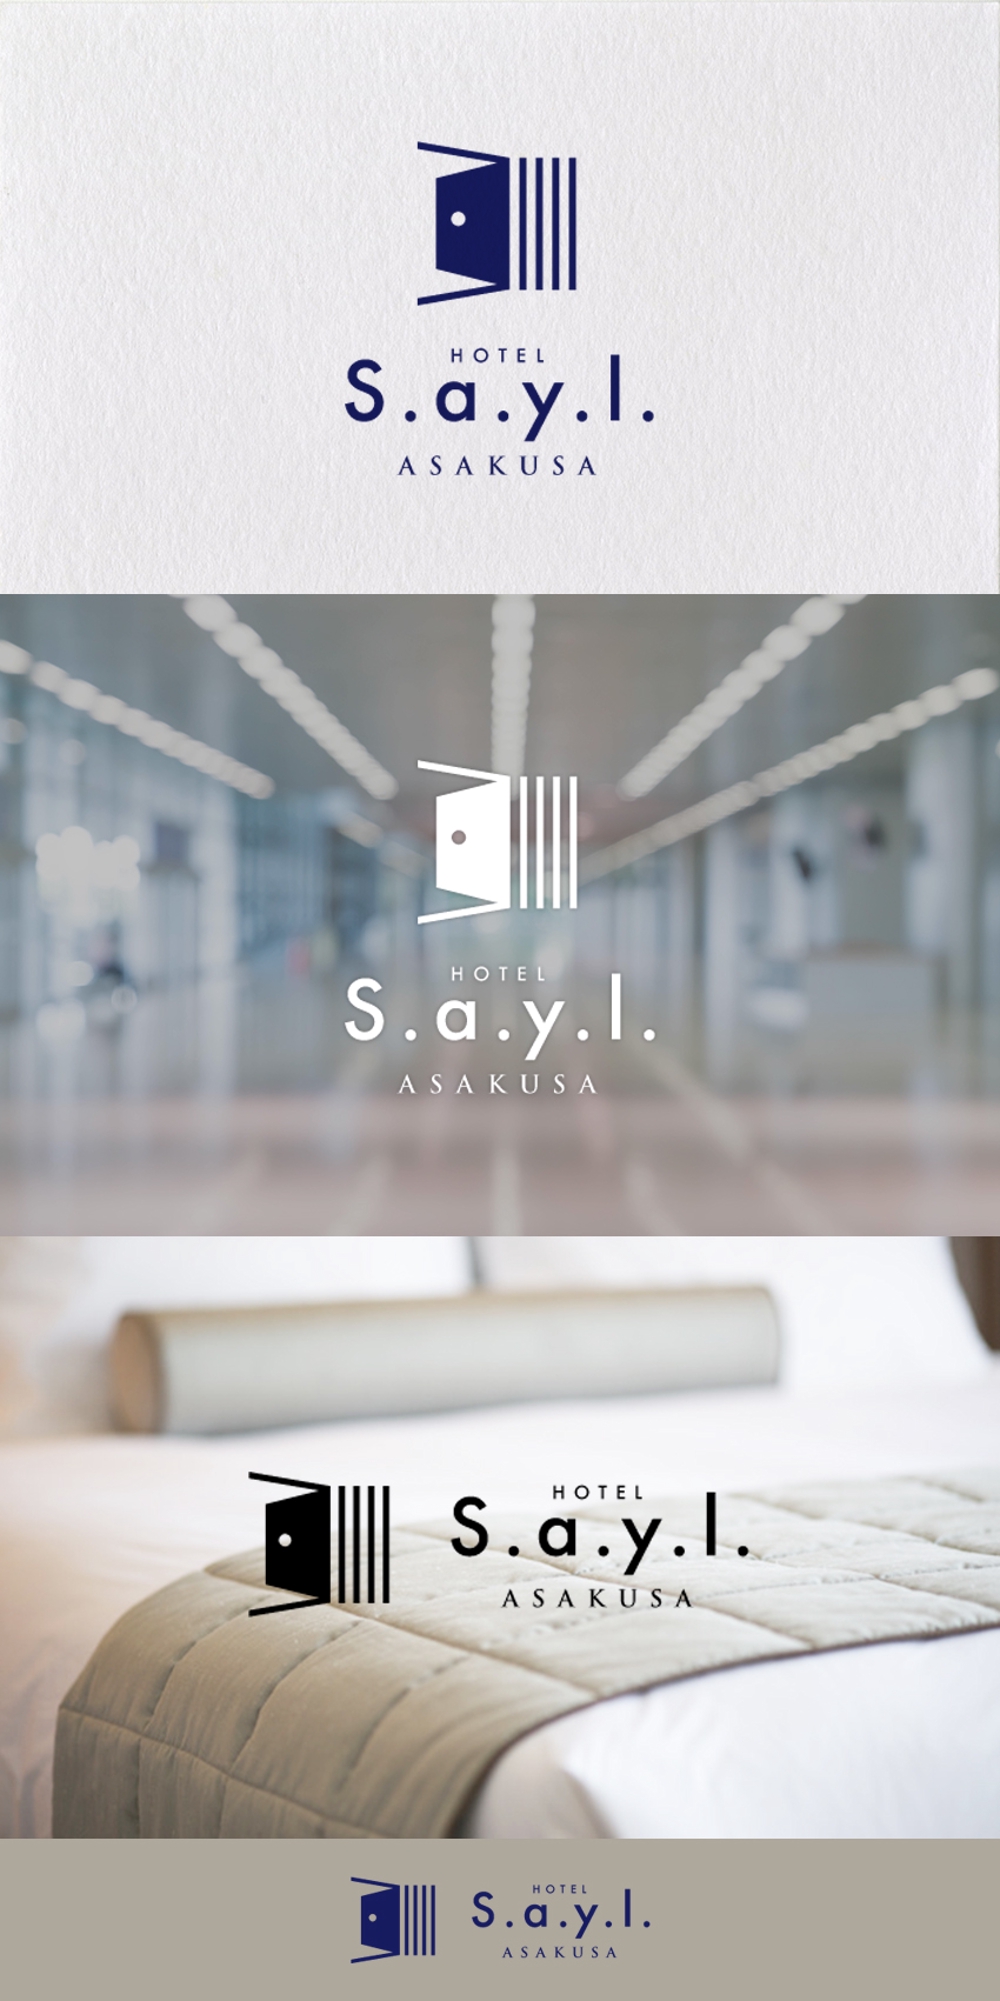 アパートメントホテル「s.a.y.l.Hotel／stay as you like」のロゴ